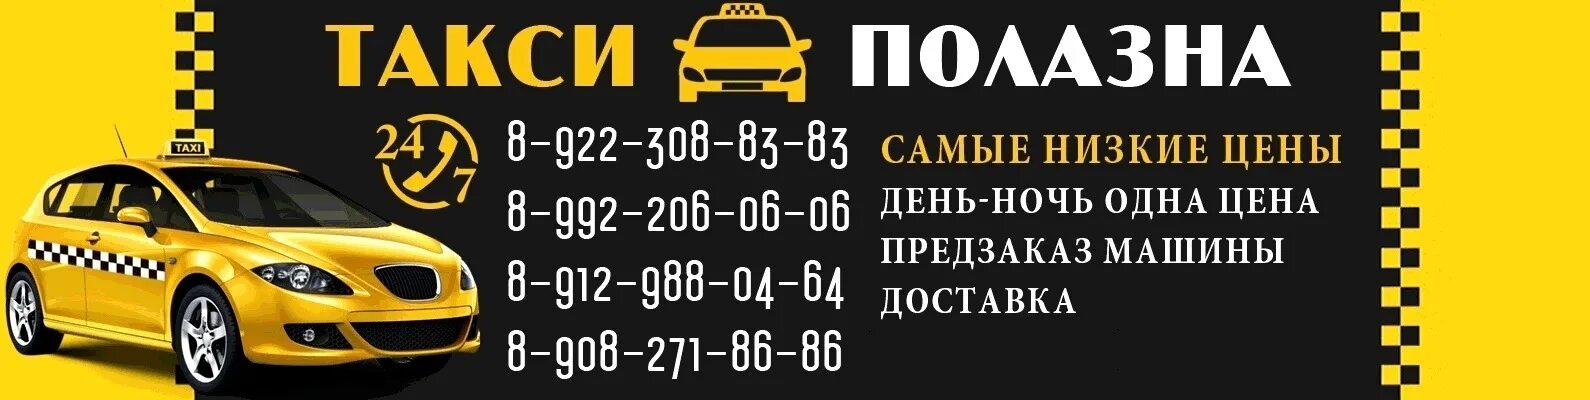 Такси Полазна. Такси в Полазне. Номера такси в Полазне. Такси Полазна Пермский край. Пермские такси номера телефонов